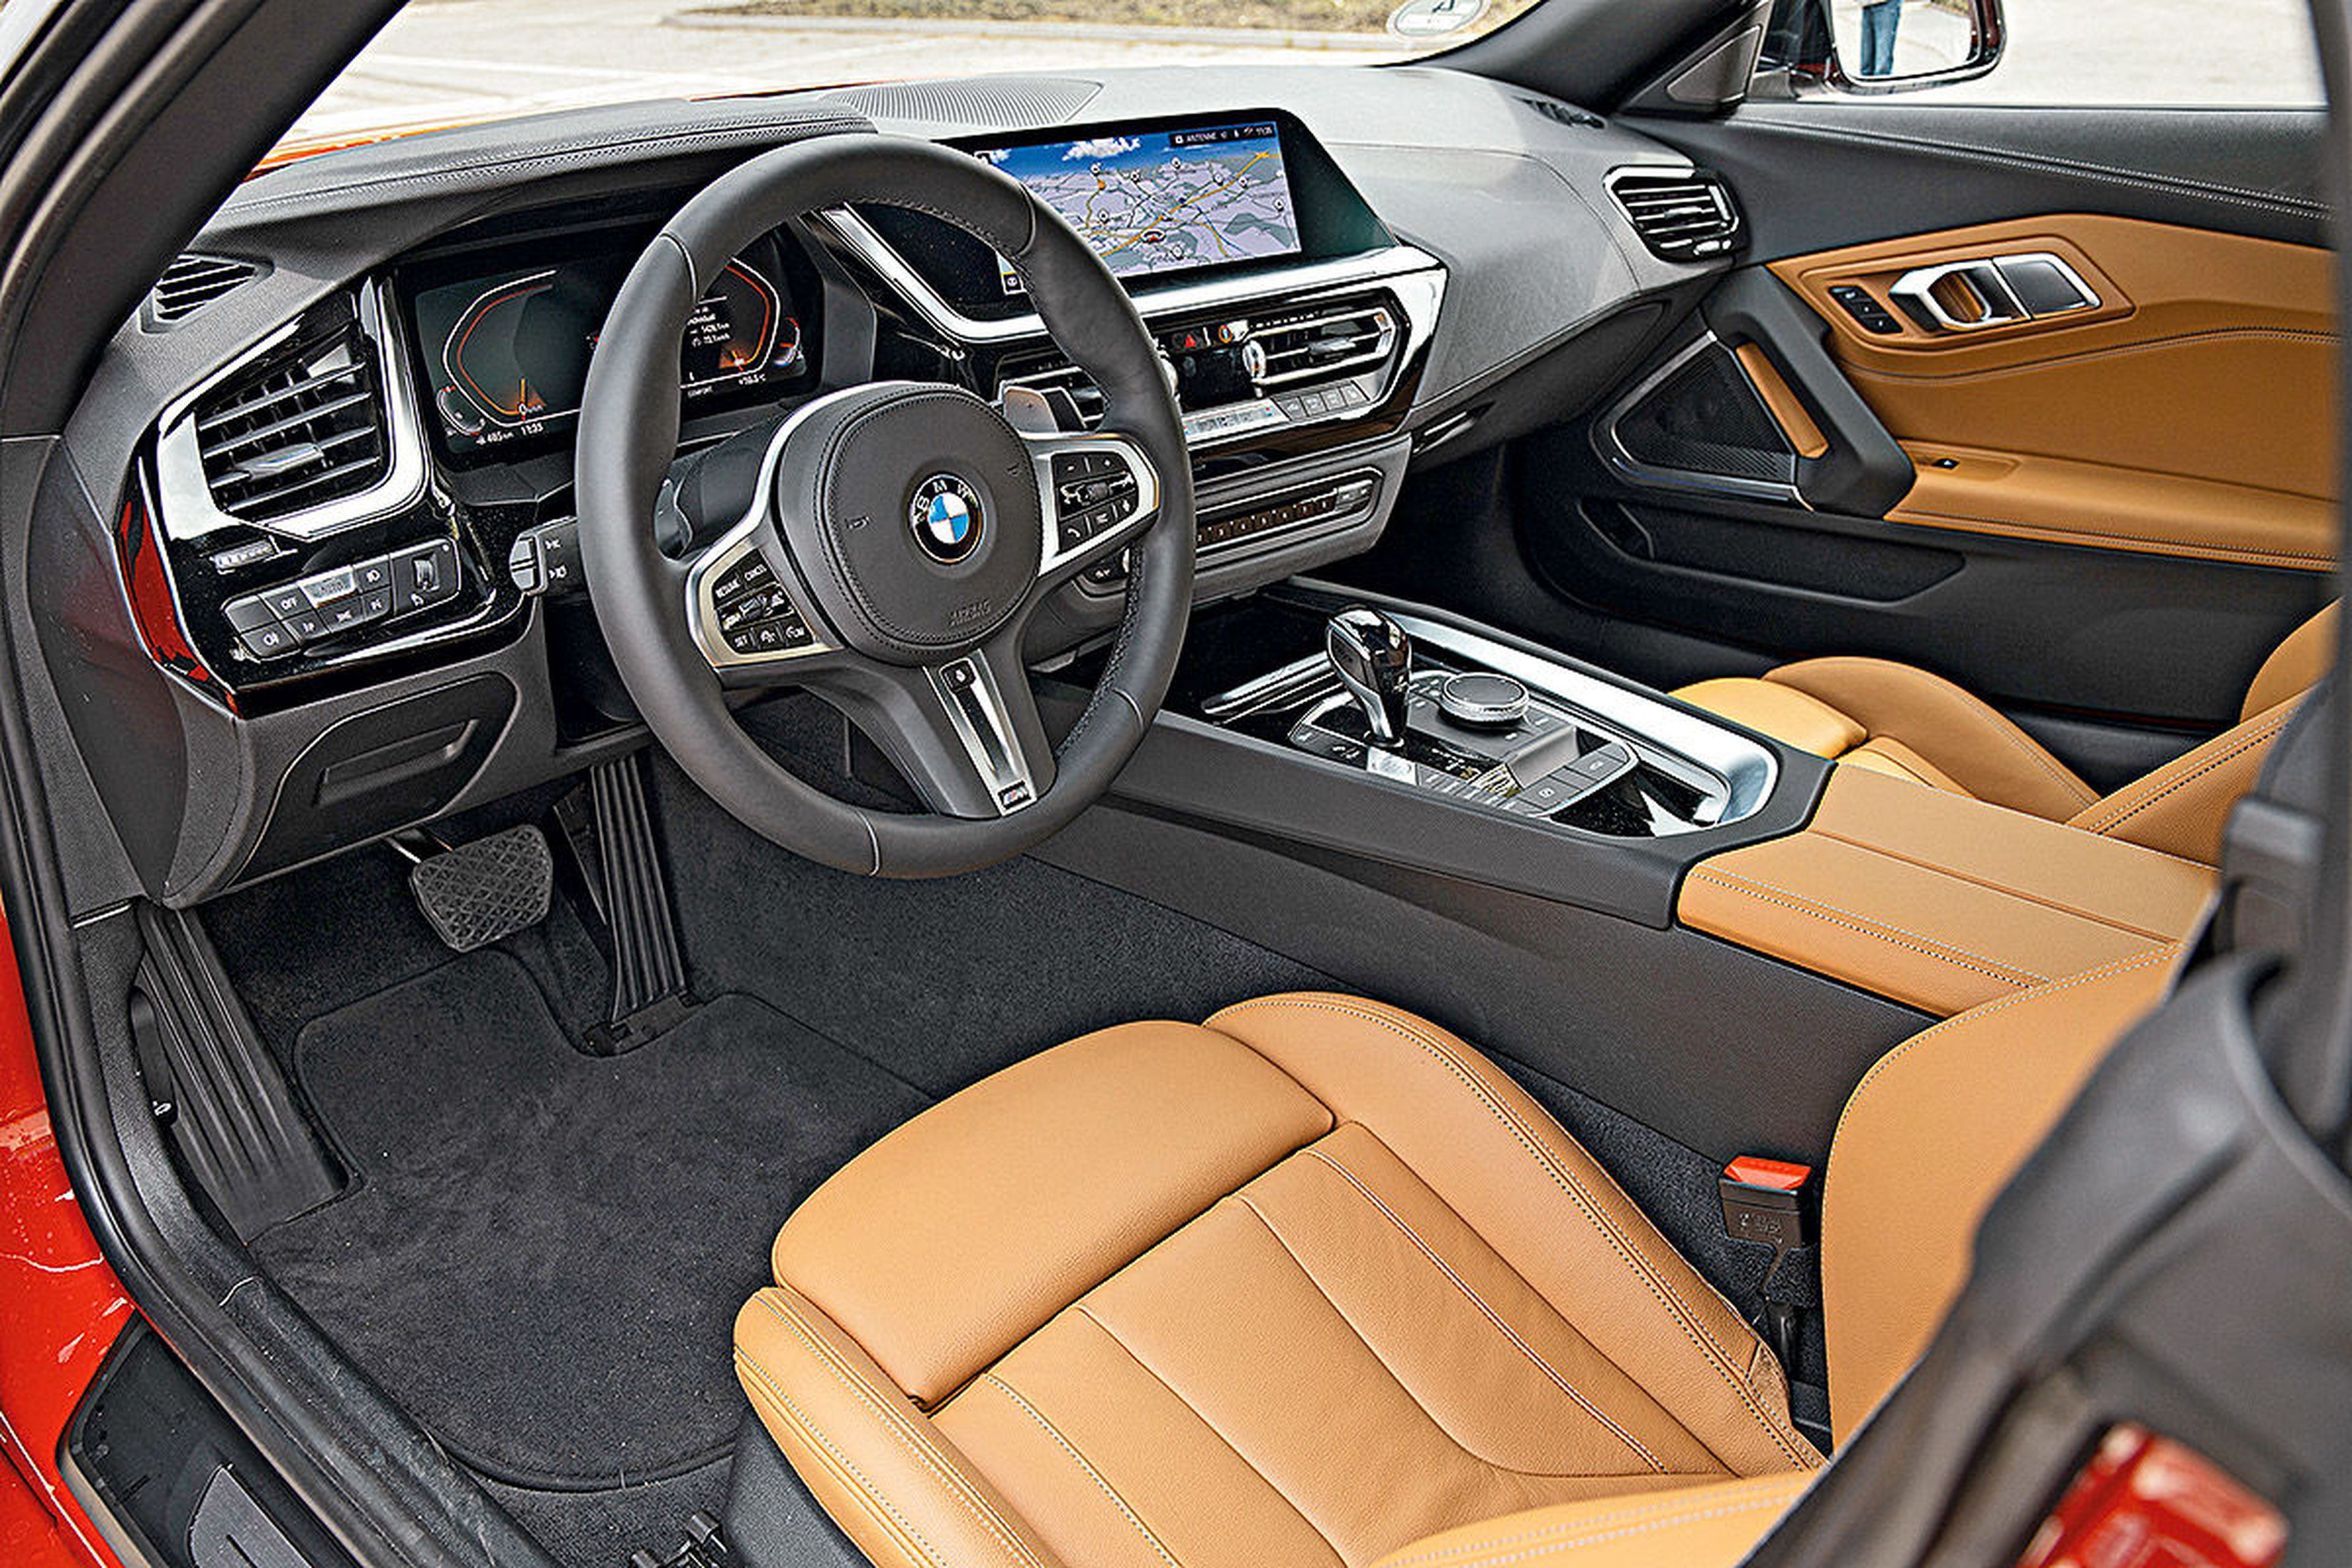 El interior del BMW no es tan rabiosamente deportivo, pero sí mucho más confortable